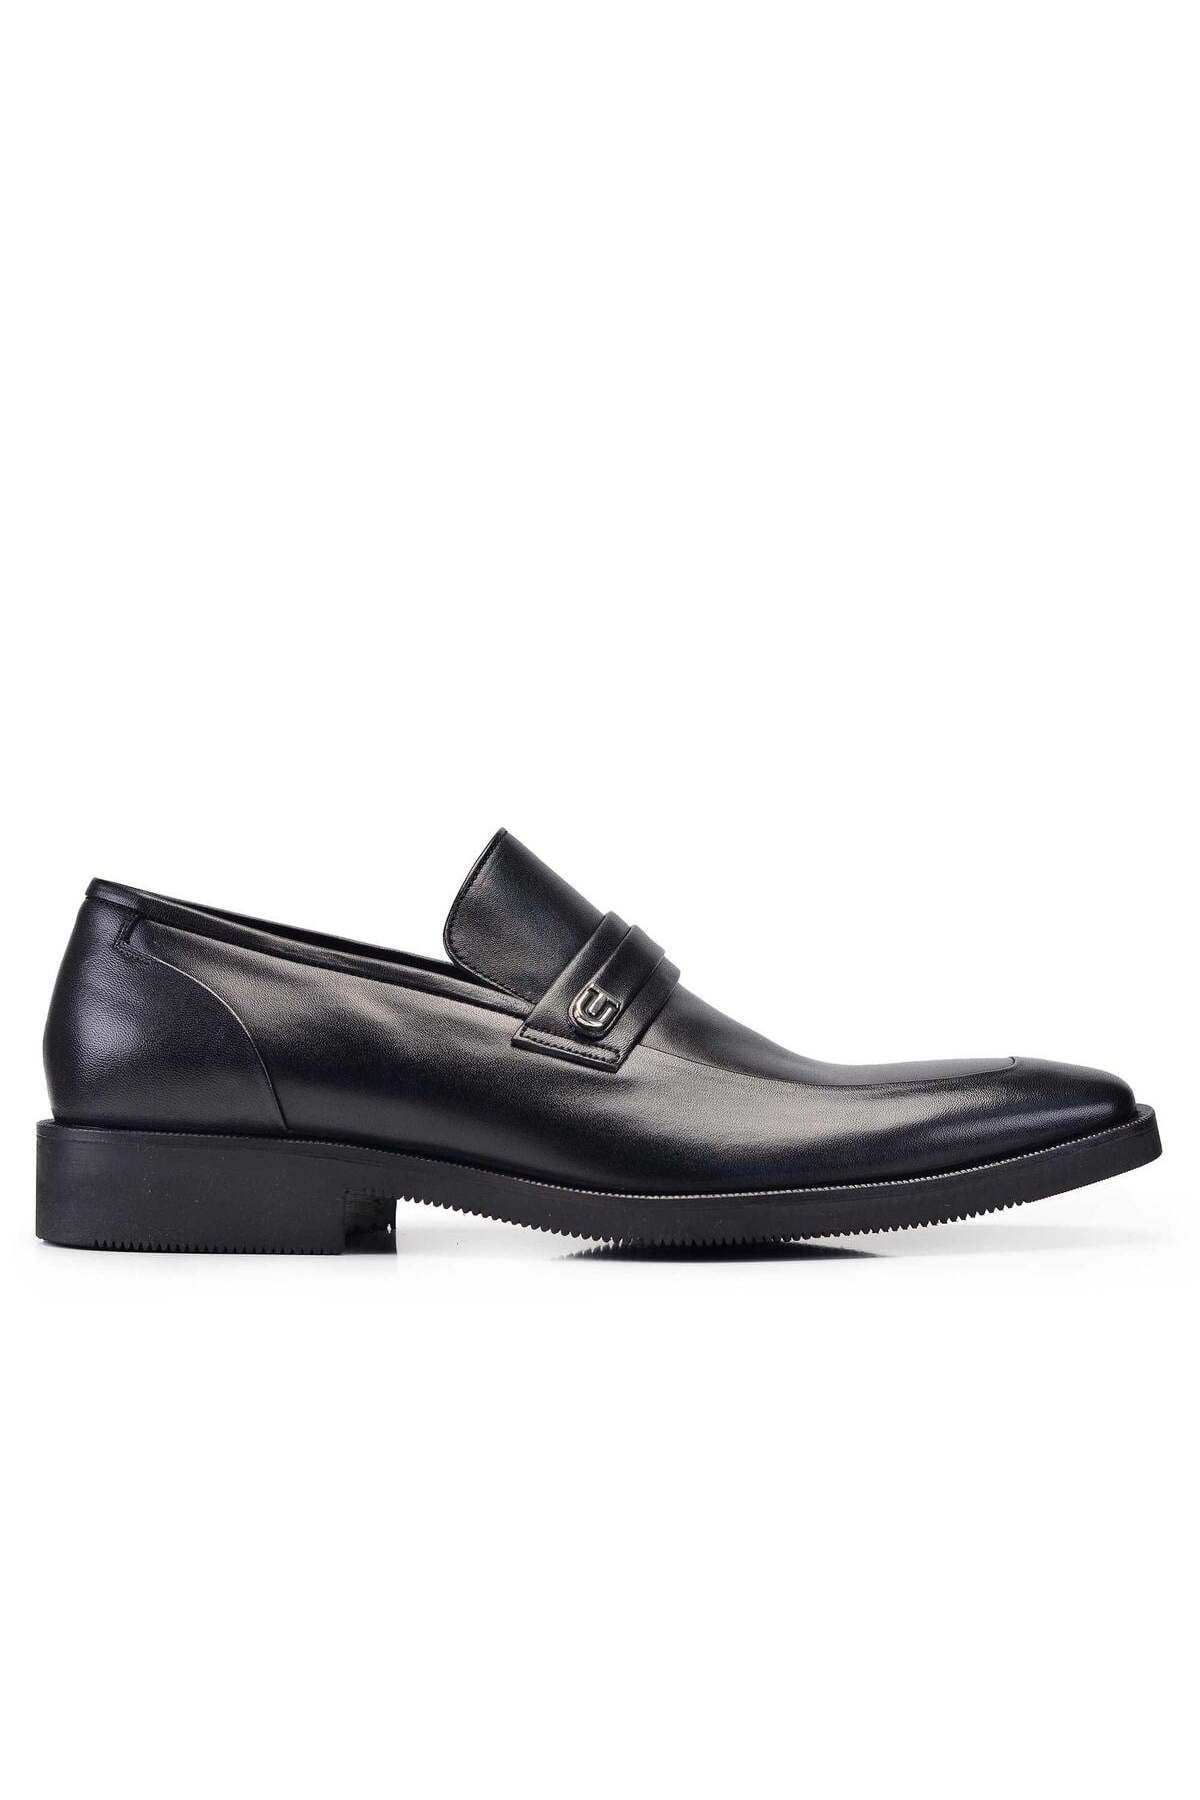 Nevzat Onay Siyah Günlük Loafer Erkek Ayakkabı -11341-